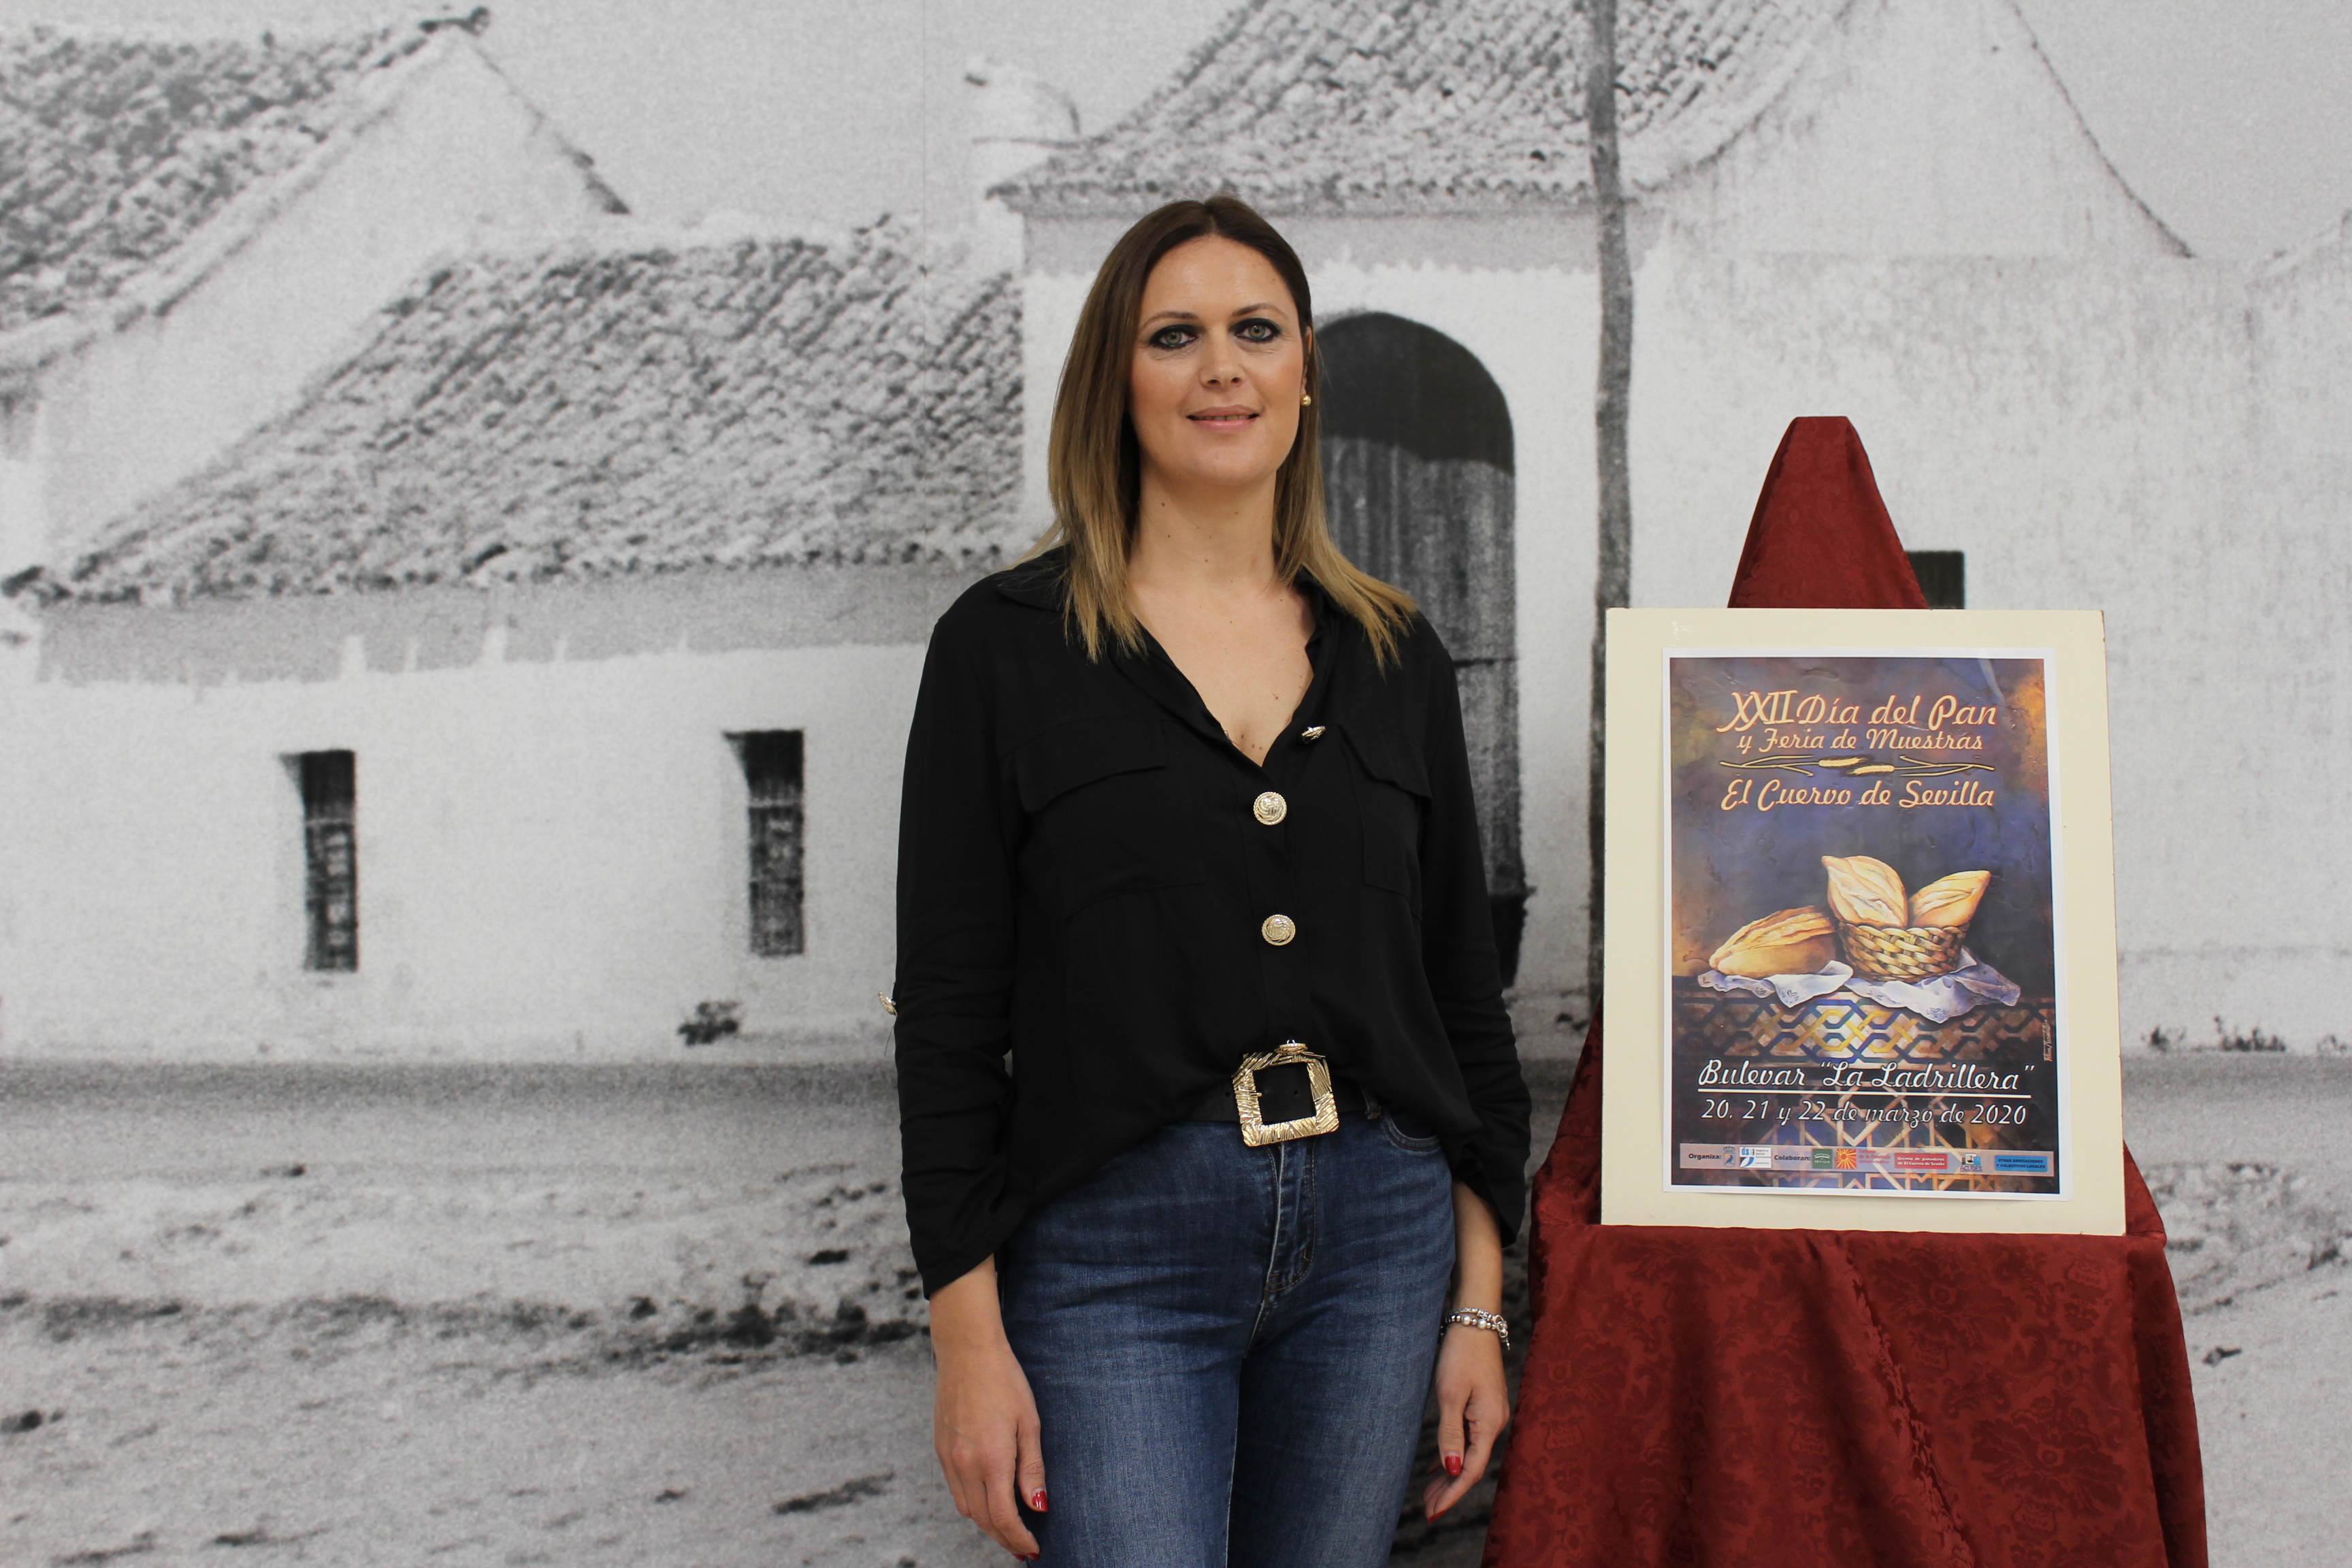 Censi Romero, delegada de Fomento presentando el XXII Día del Pan y Feria de Muestras